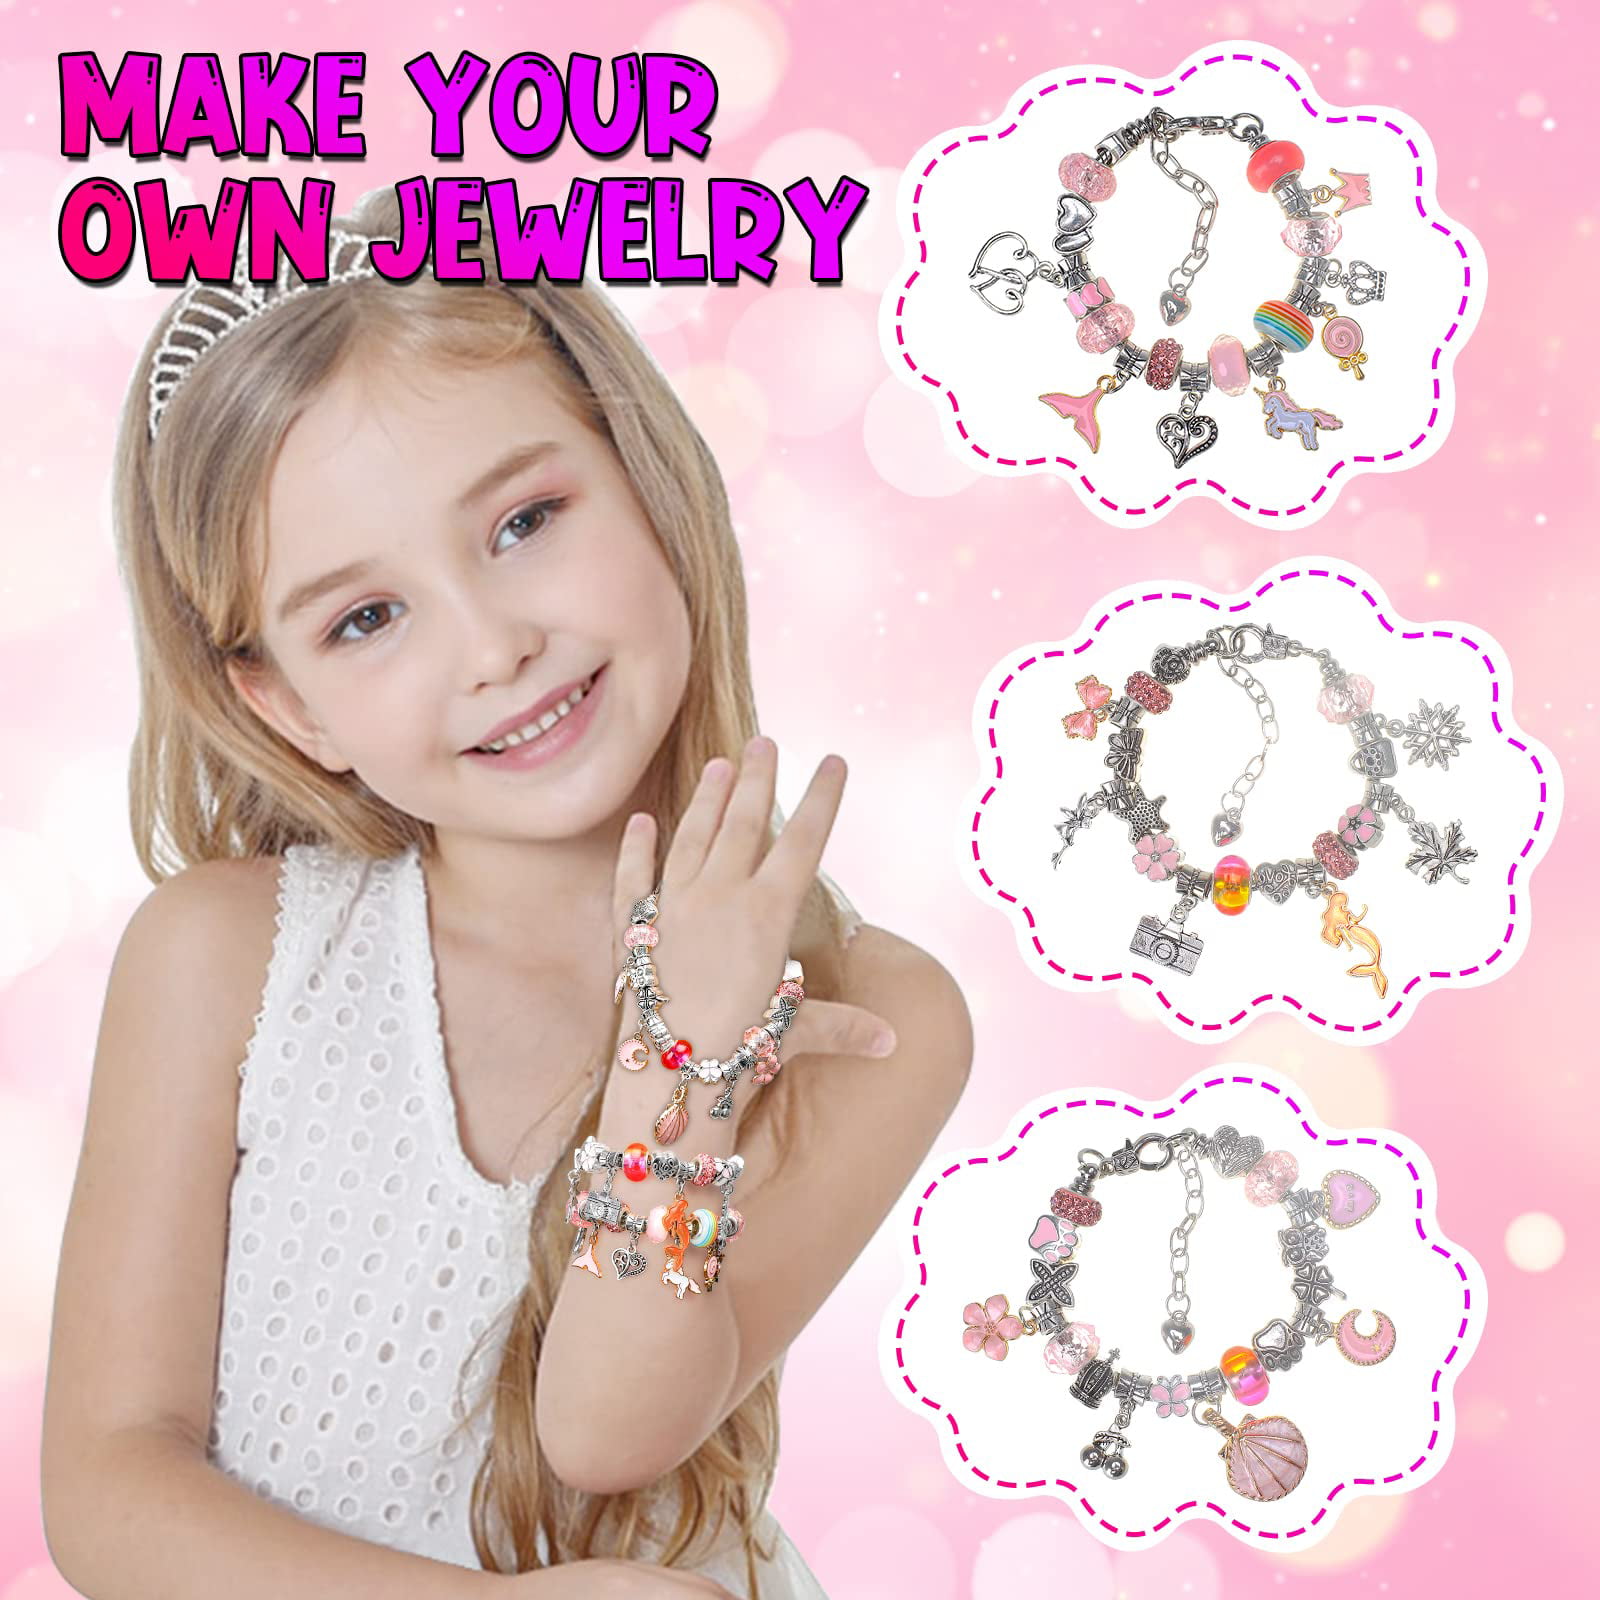 Buy Style GirlzStyle Girlz Unicorn Jewellery Making Kit for Girls